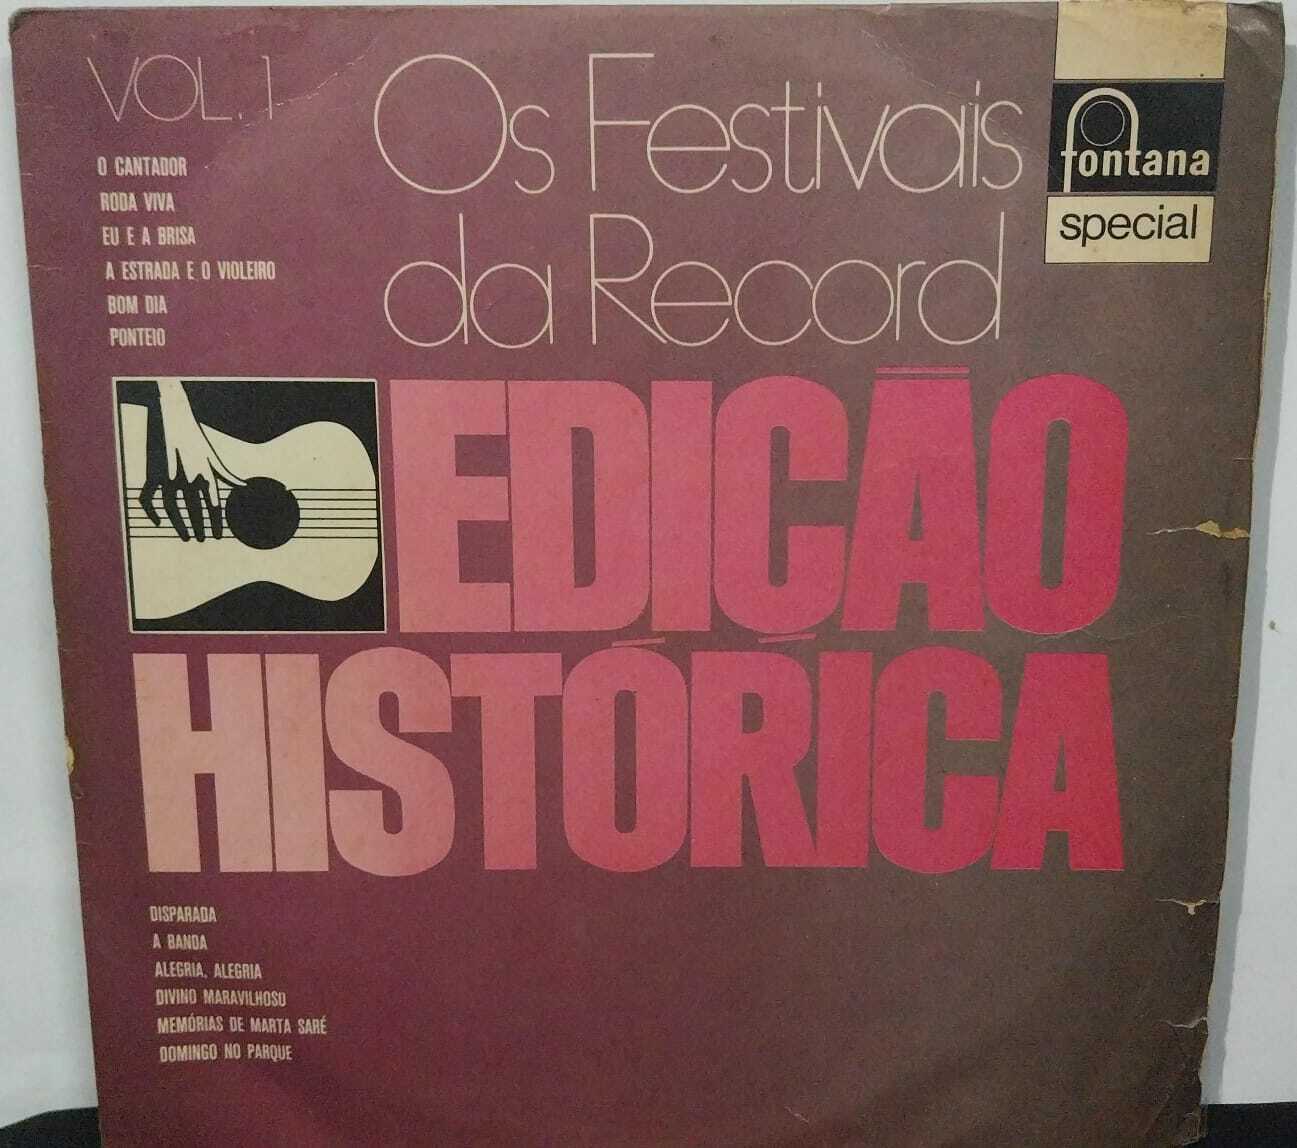 Vinil - Festivais da Records - Edição Histórica Vol 1